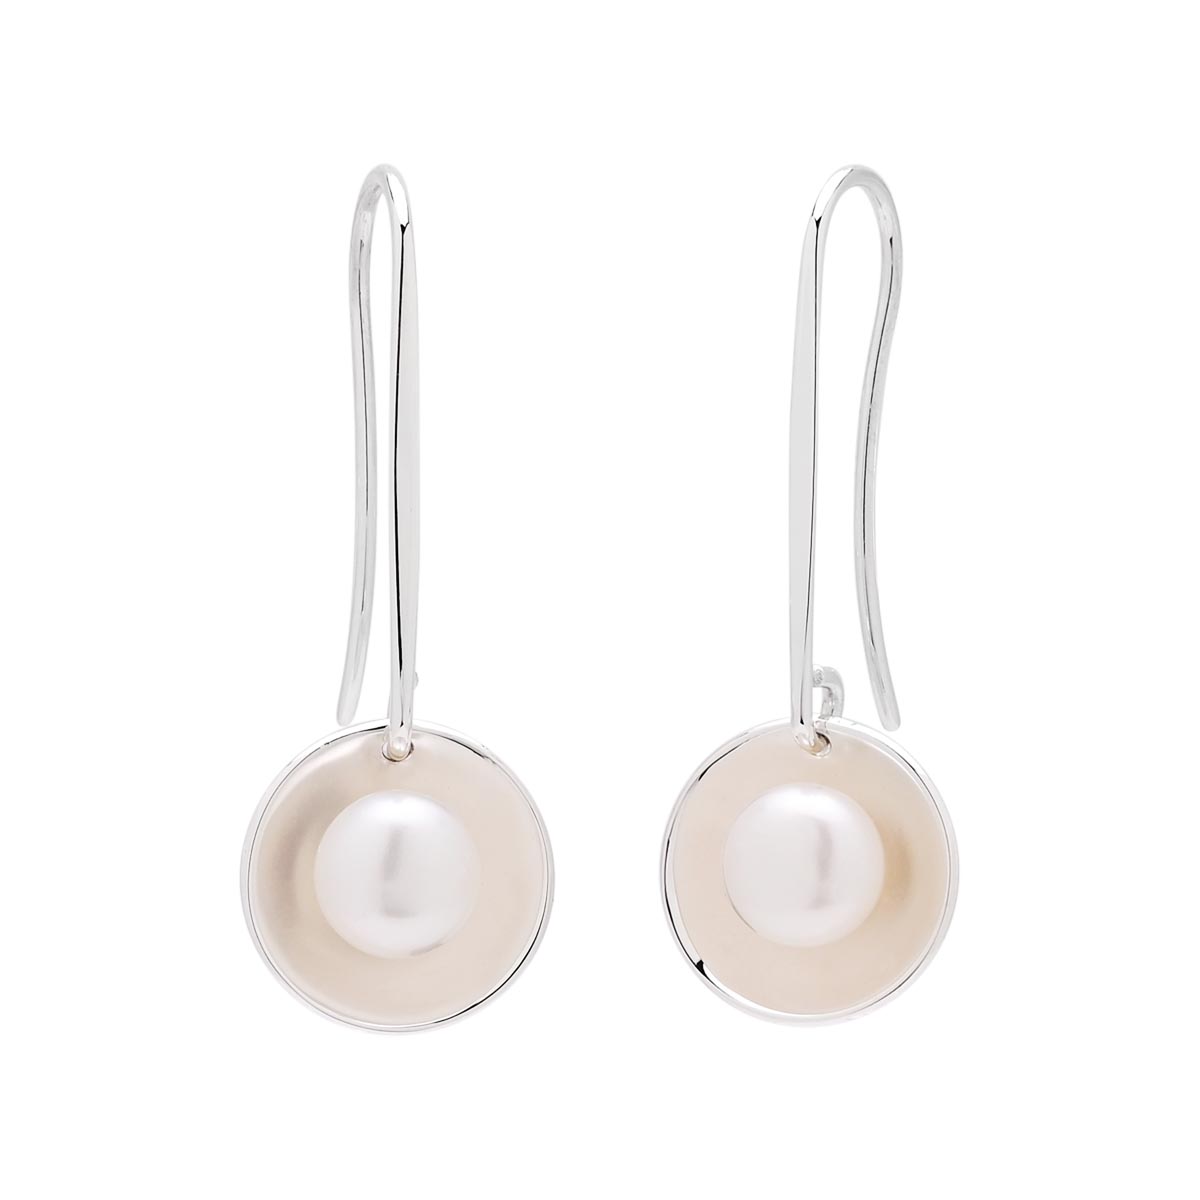 E.L. Designs Cultured Freshwater Pearl Sun Glow Earrings in Sterling Silver (6mm)